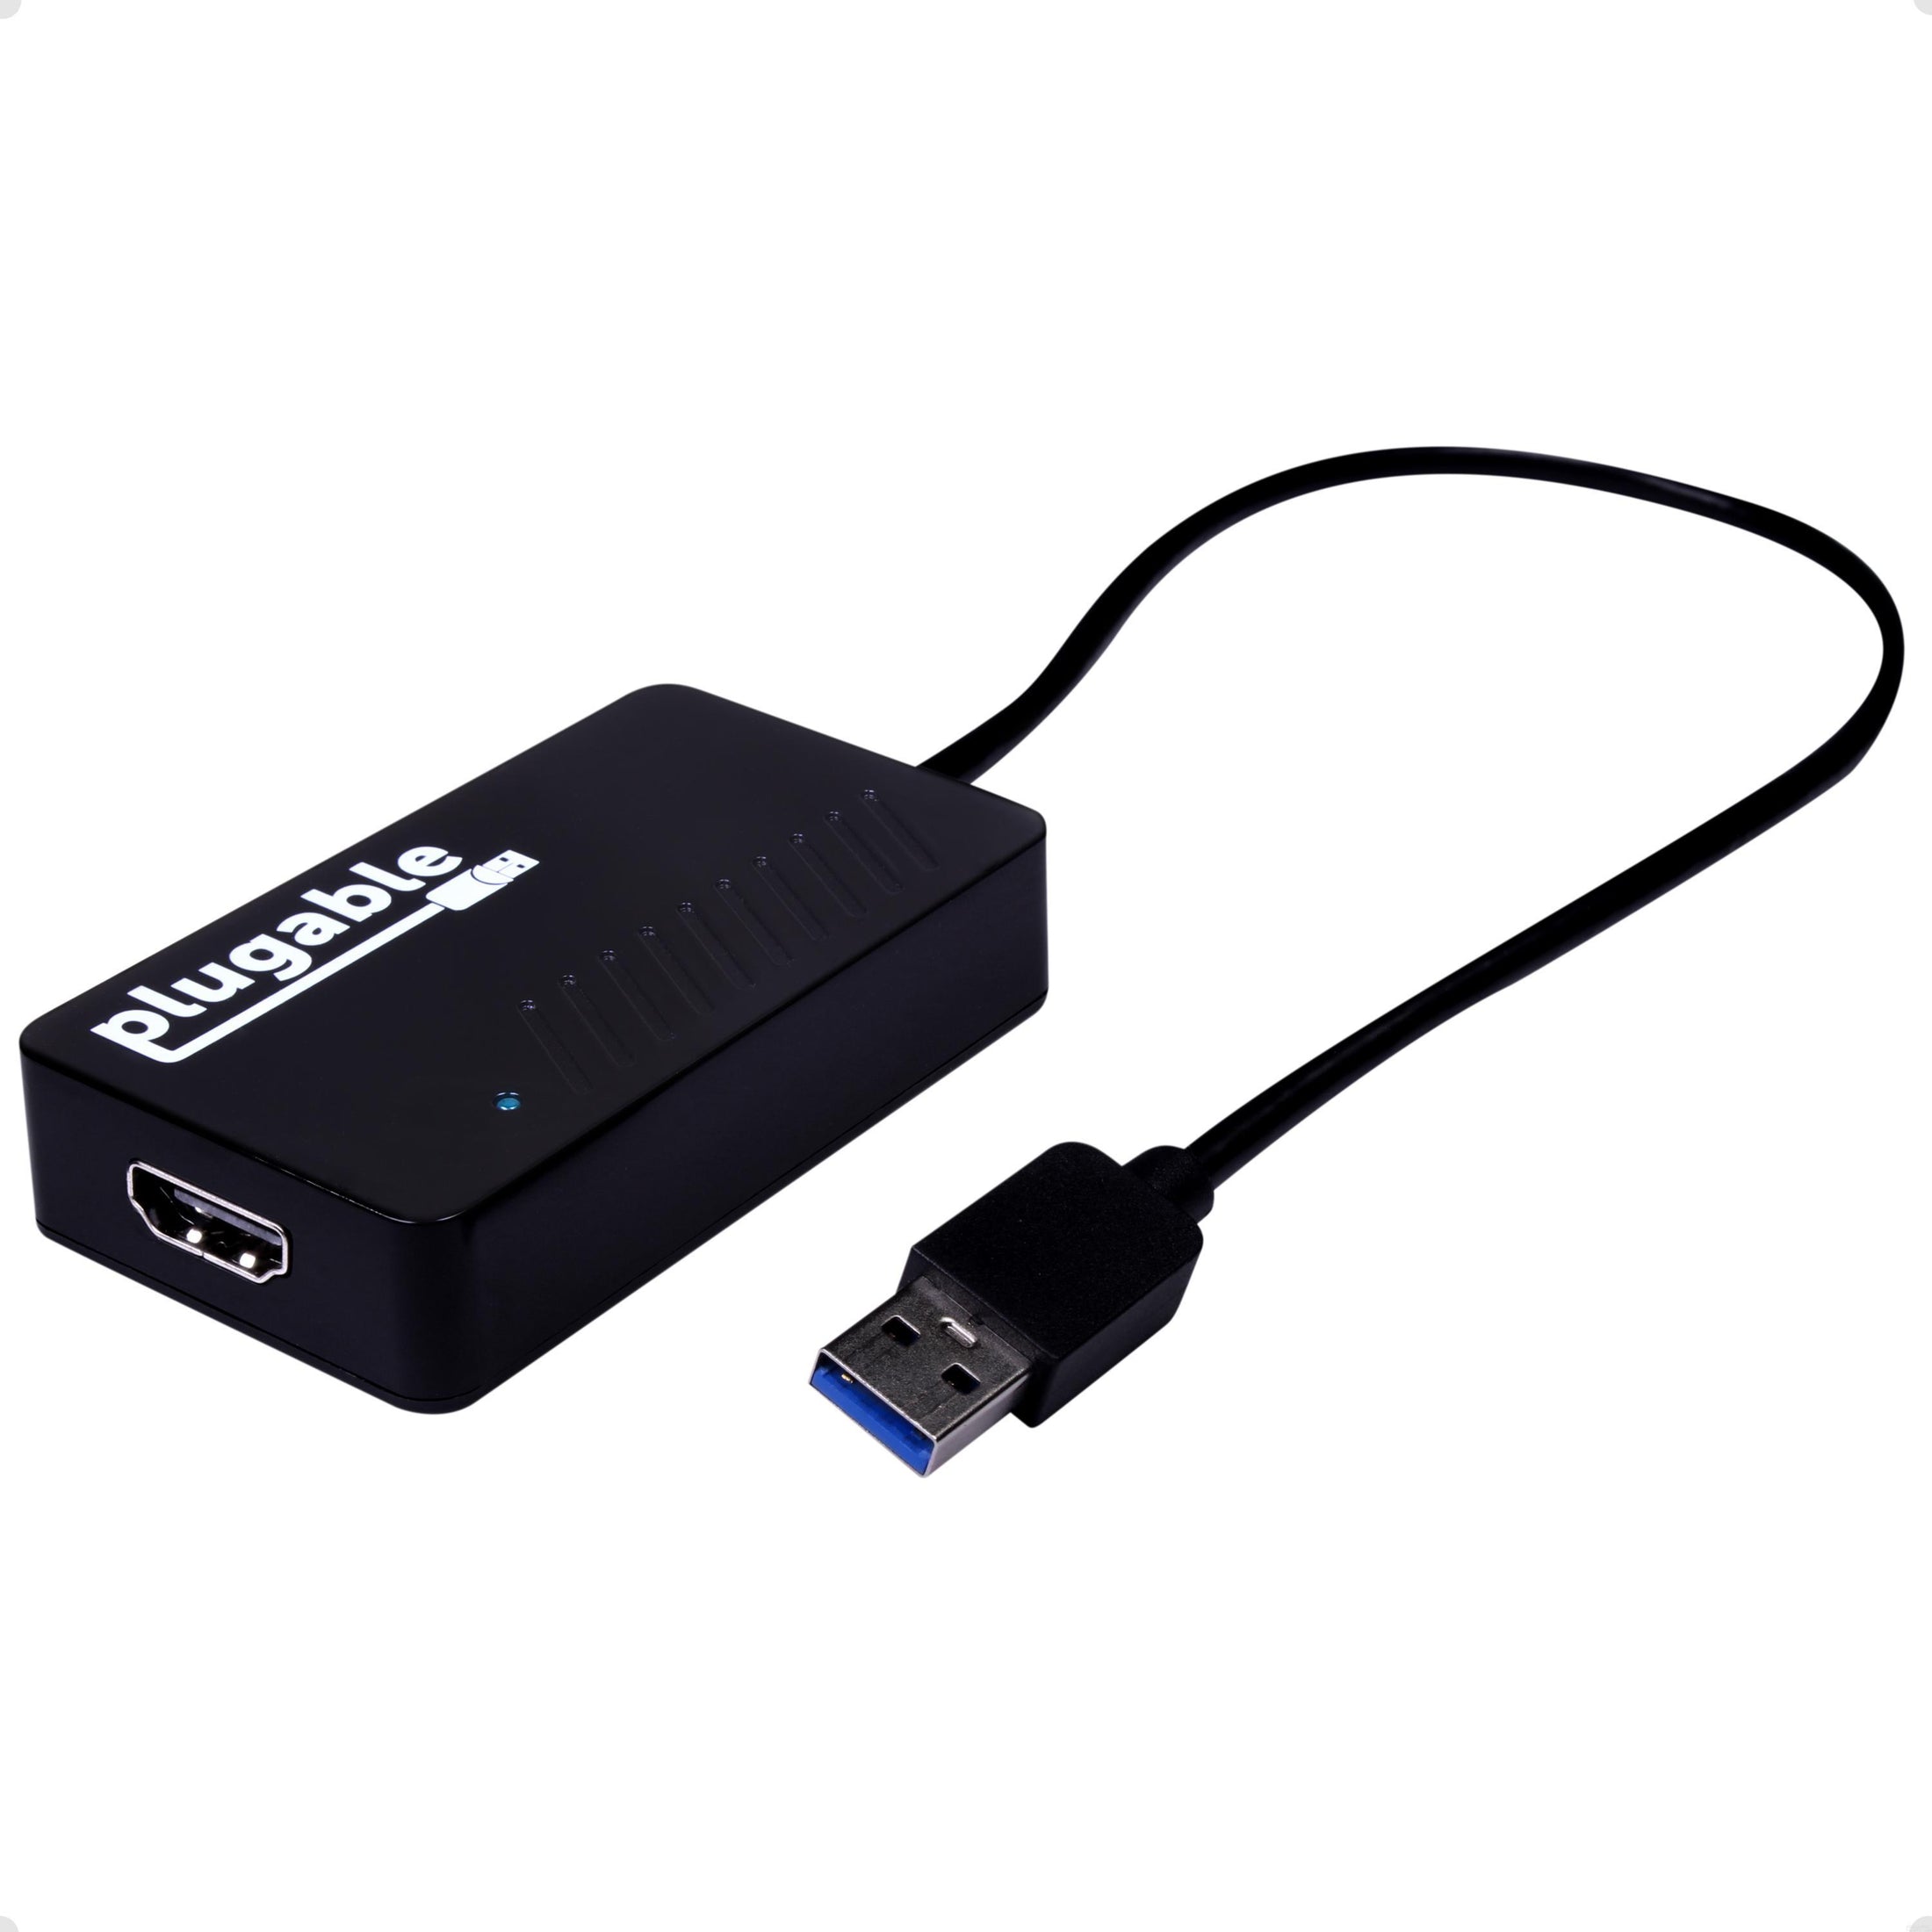 Adaptateur USB 3.0 USB-C vers USB-A - M/F